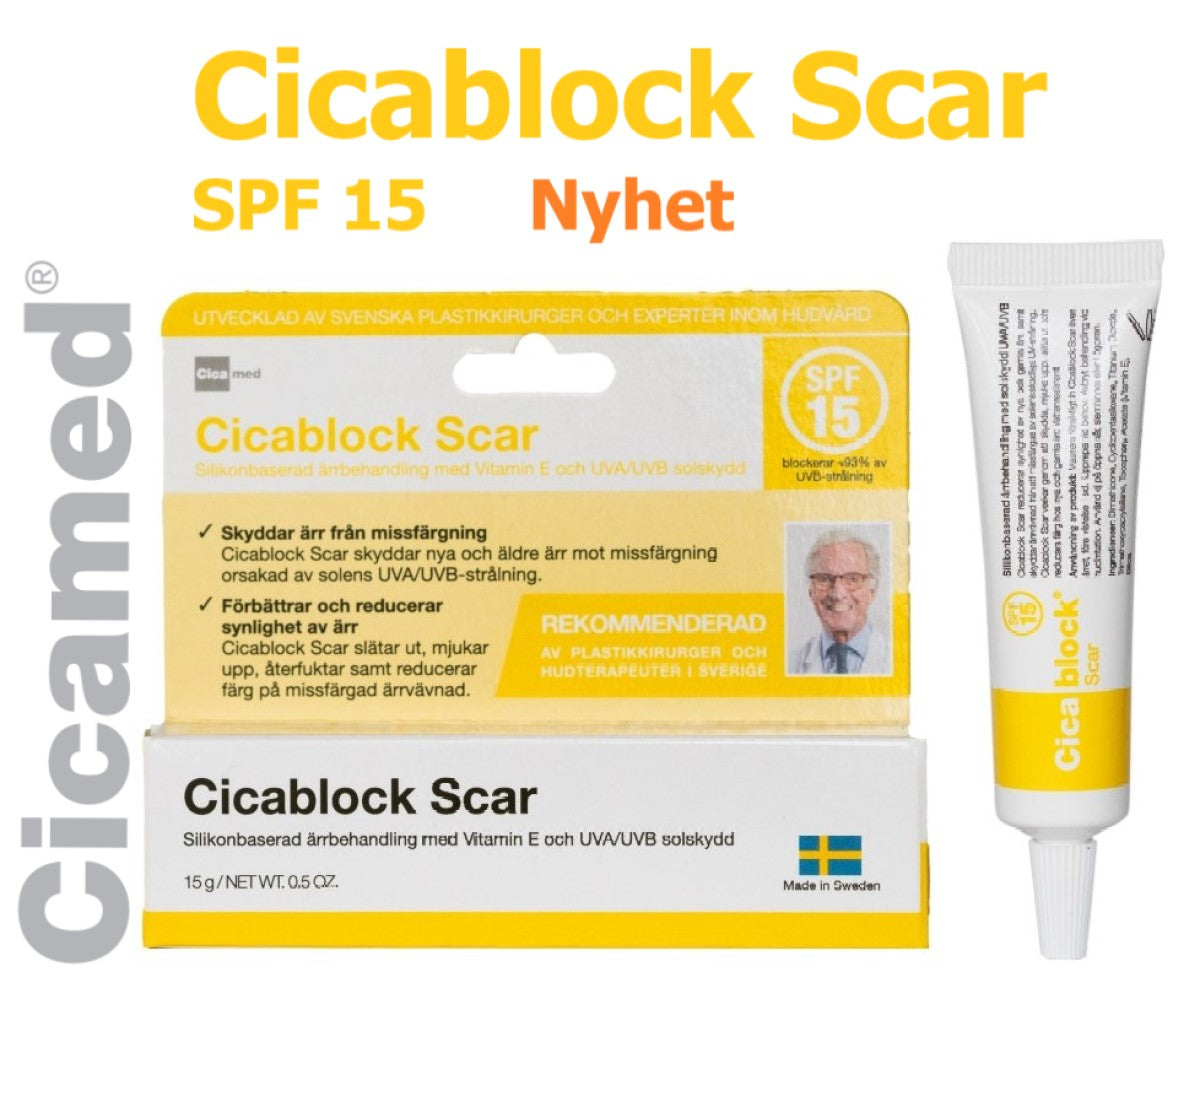 Cicablock Scar